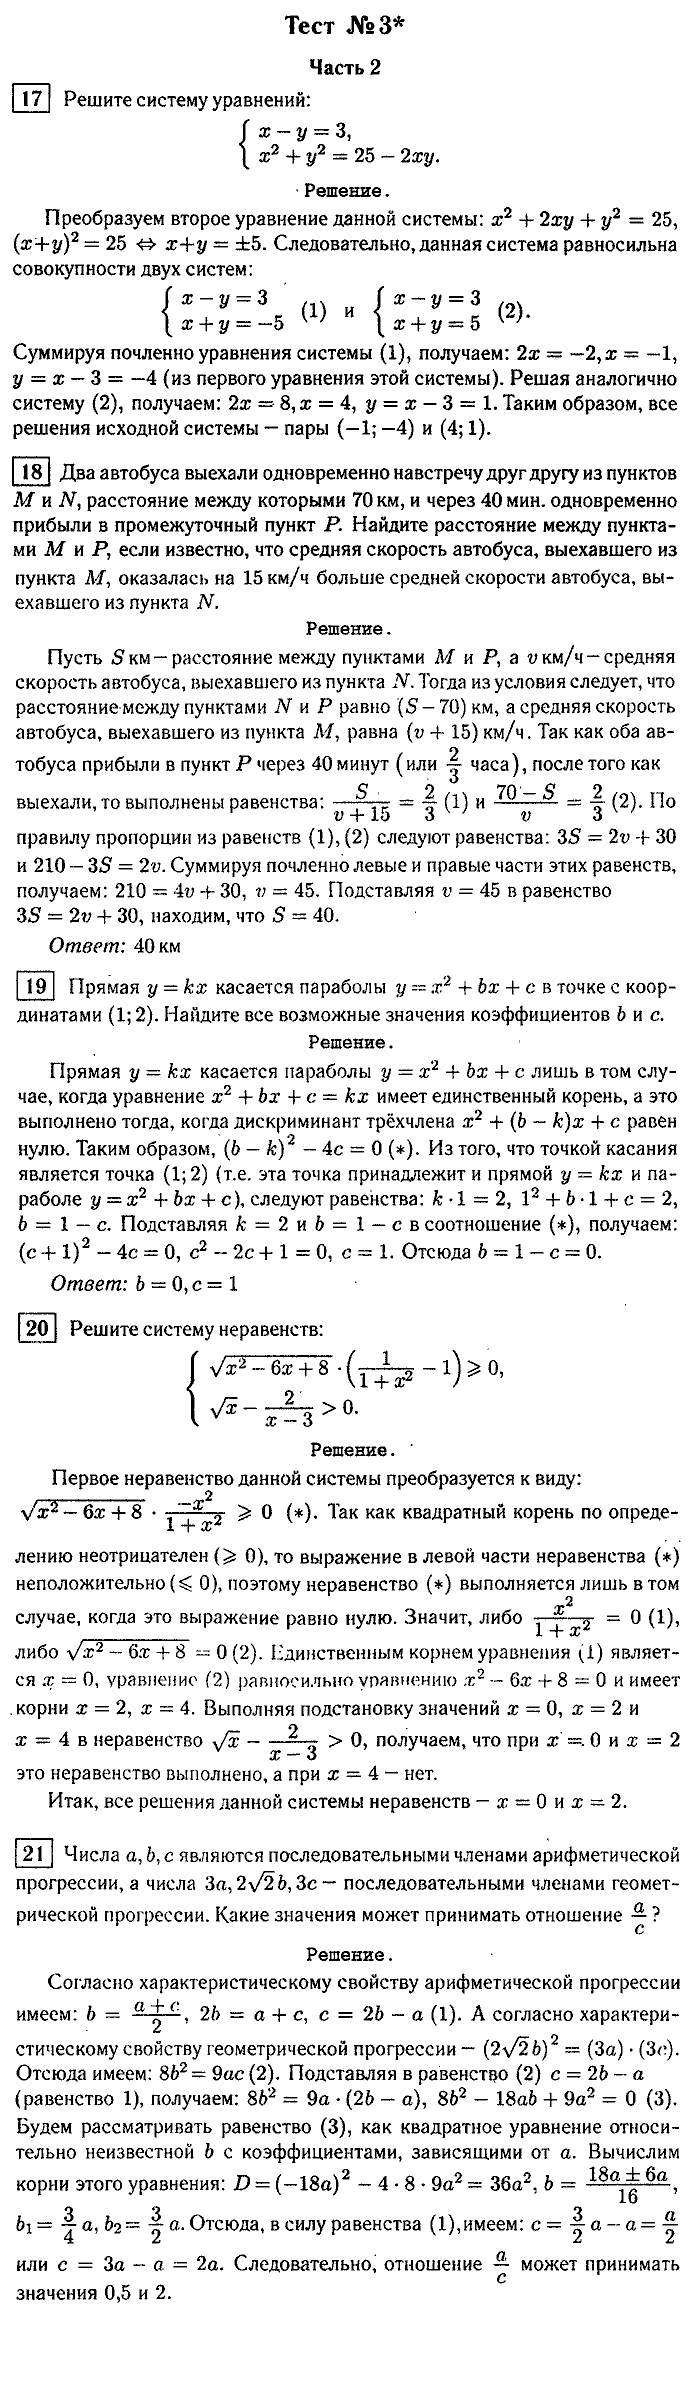 Итоговая аттестация, 9 класс, Мальцева, 2010, §4. Решение тестов 2006 г. Задание: Тест №3